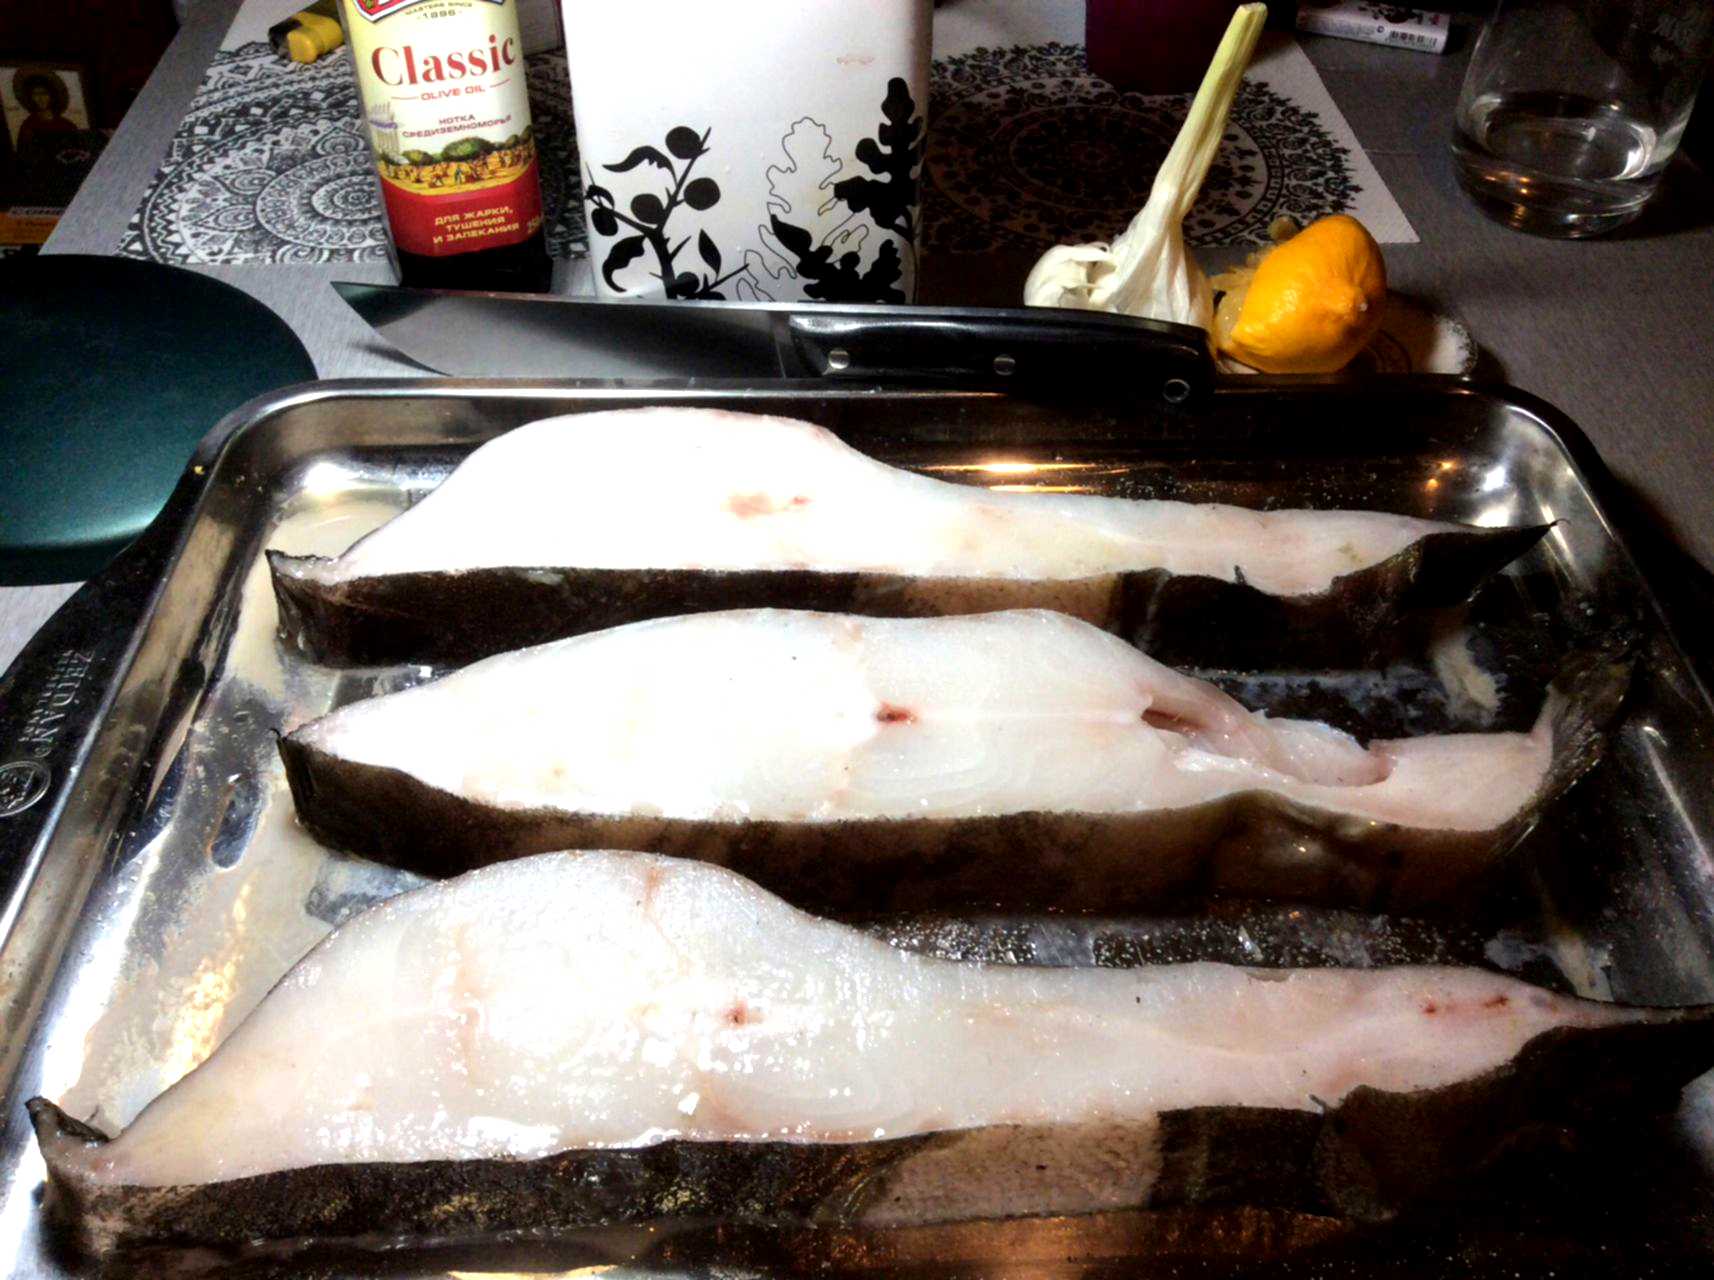 В японии запрещено готовить рыбу за рулем